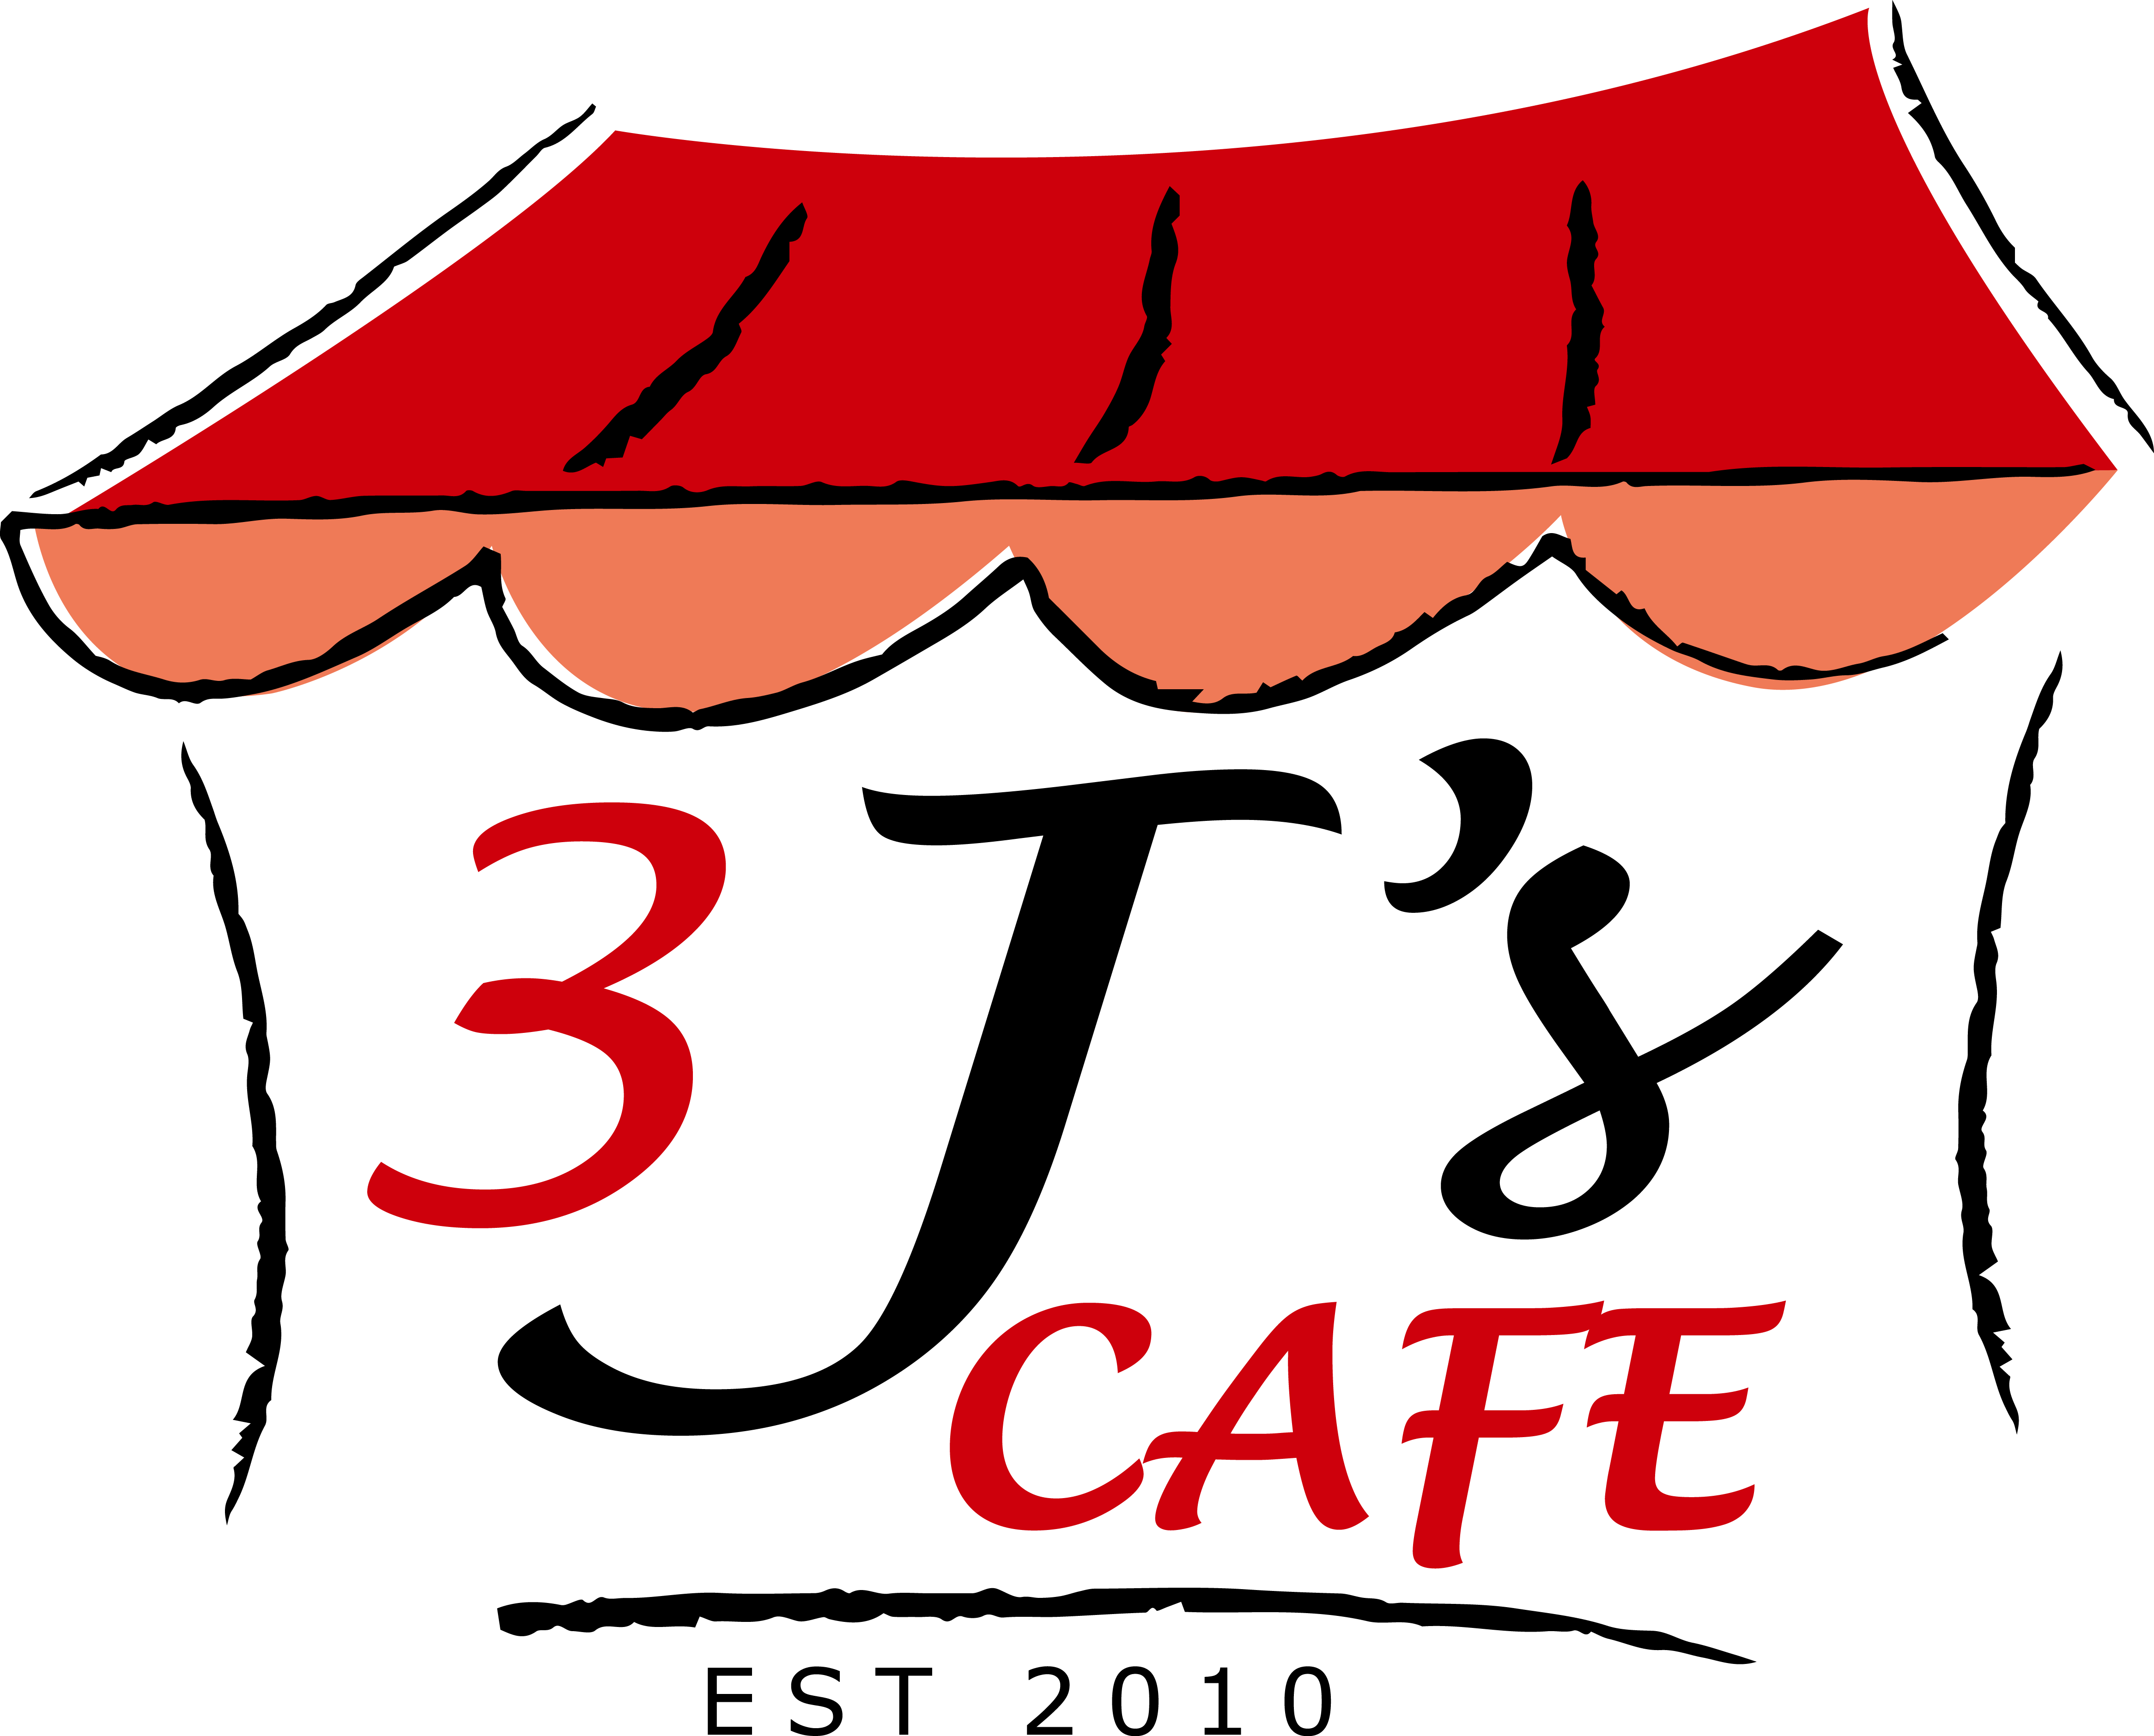 3 J's Cafe